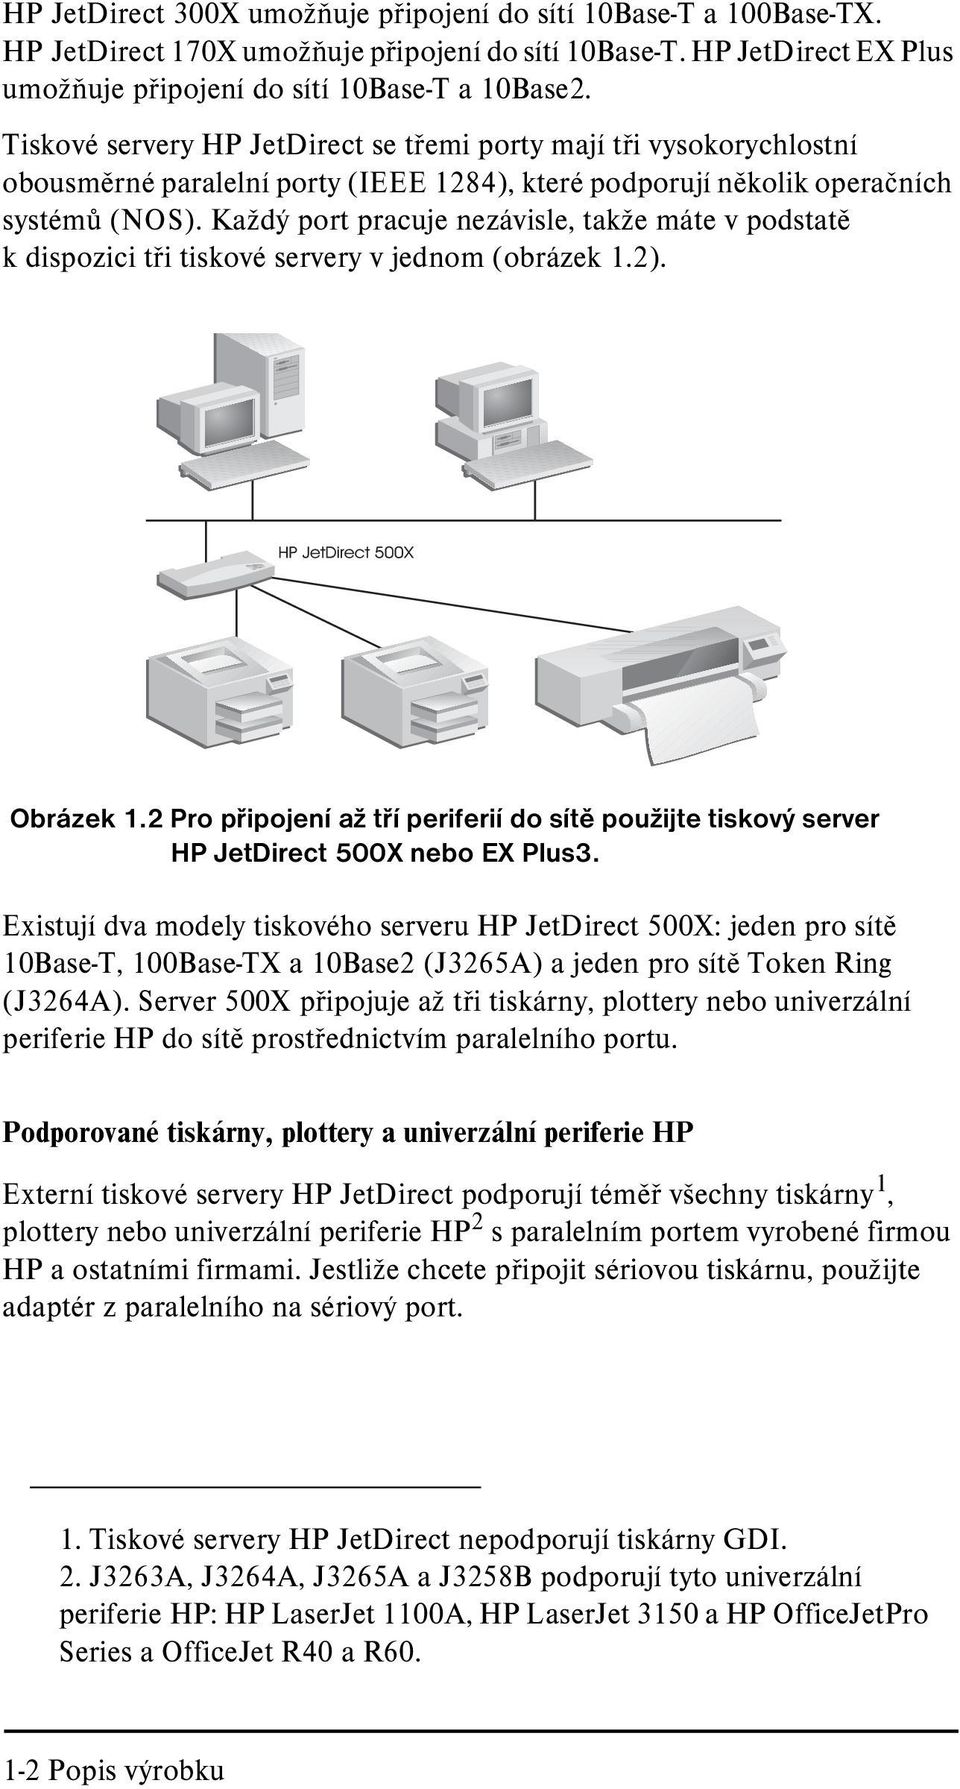 Každý port pracuje nezávisle, takže máte v podstatì k dispozici tøi tiskové servery v jednom (obrázek 1.2). Obrázek 1.